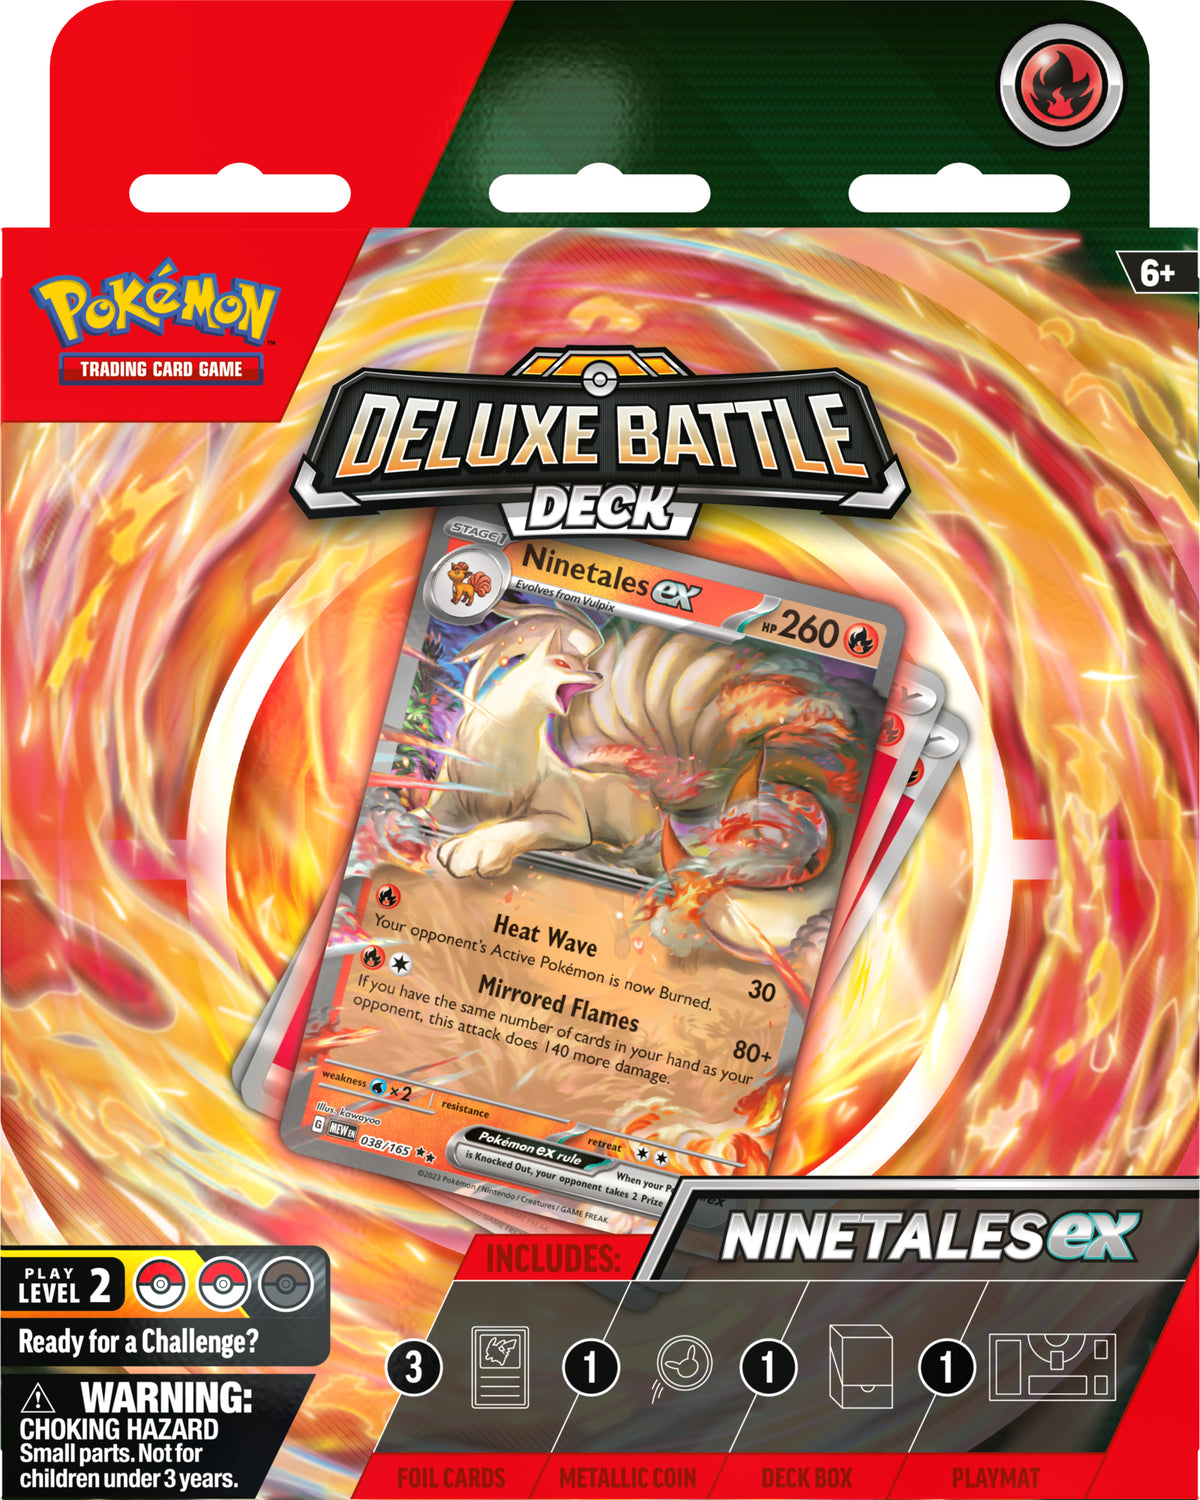 Pokémon Deluxe Battle Deck | Ninetales ex